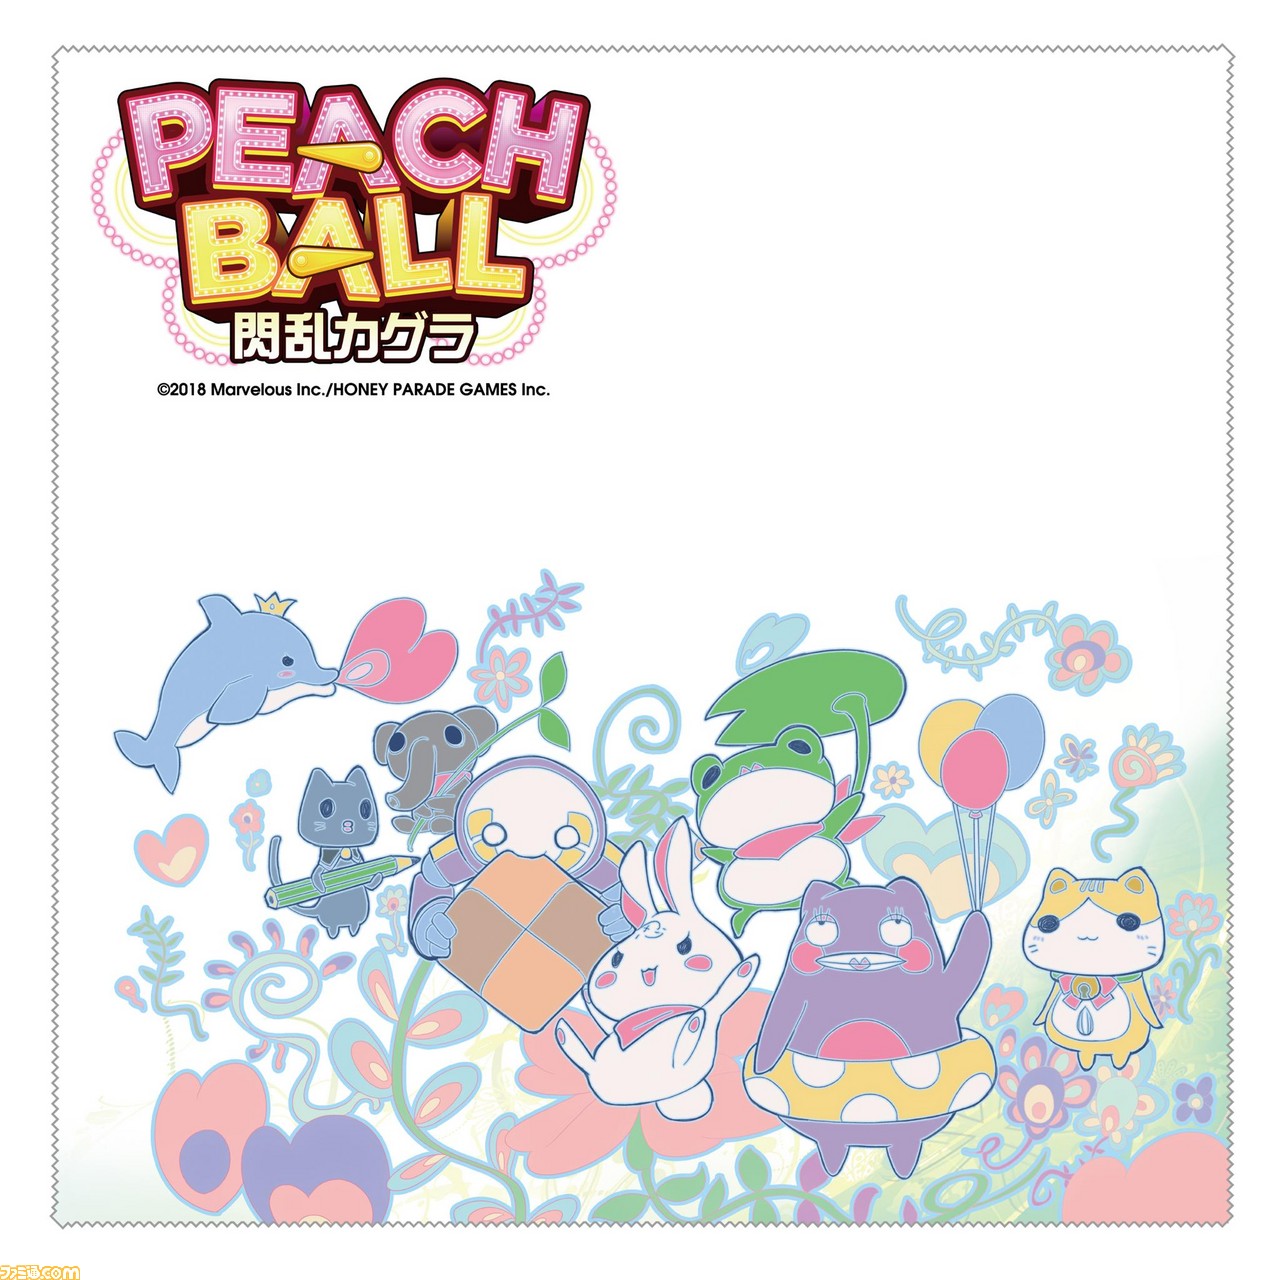 PEACH BALL 閃乱カグラ』ファミ通DXパック特典グッズの描き下ろし